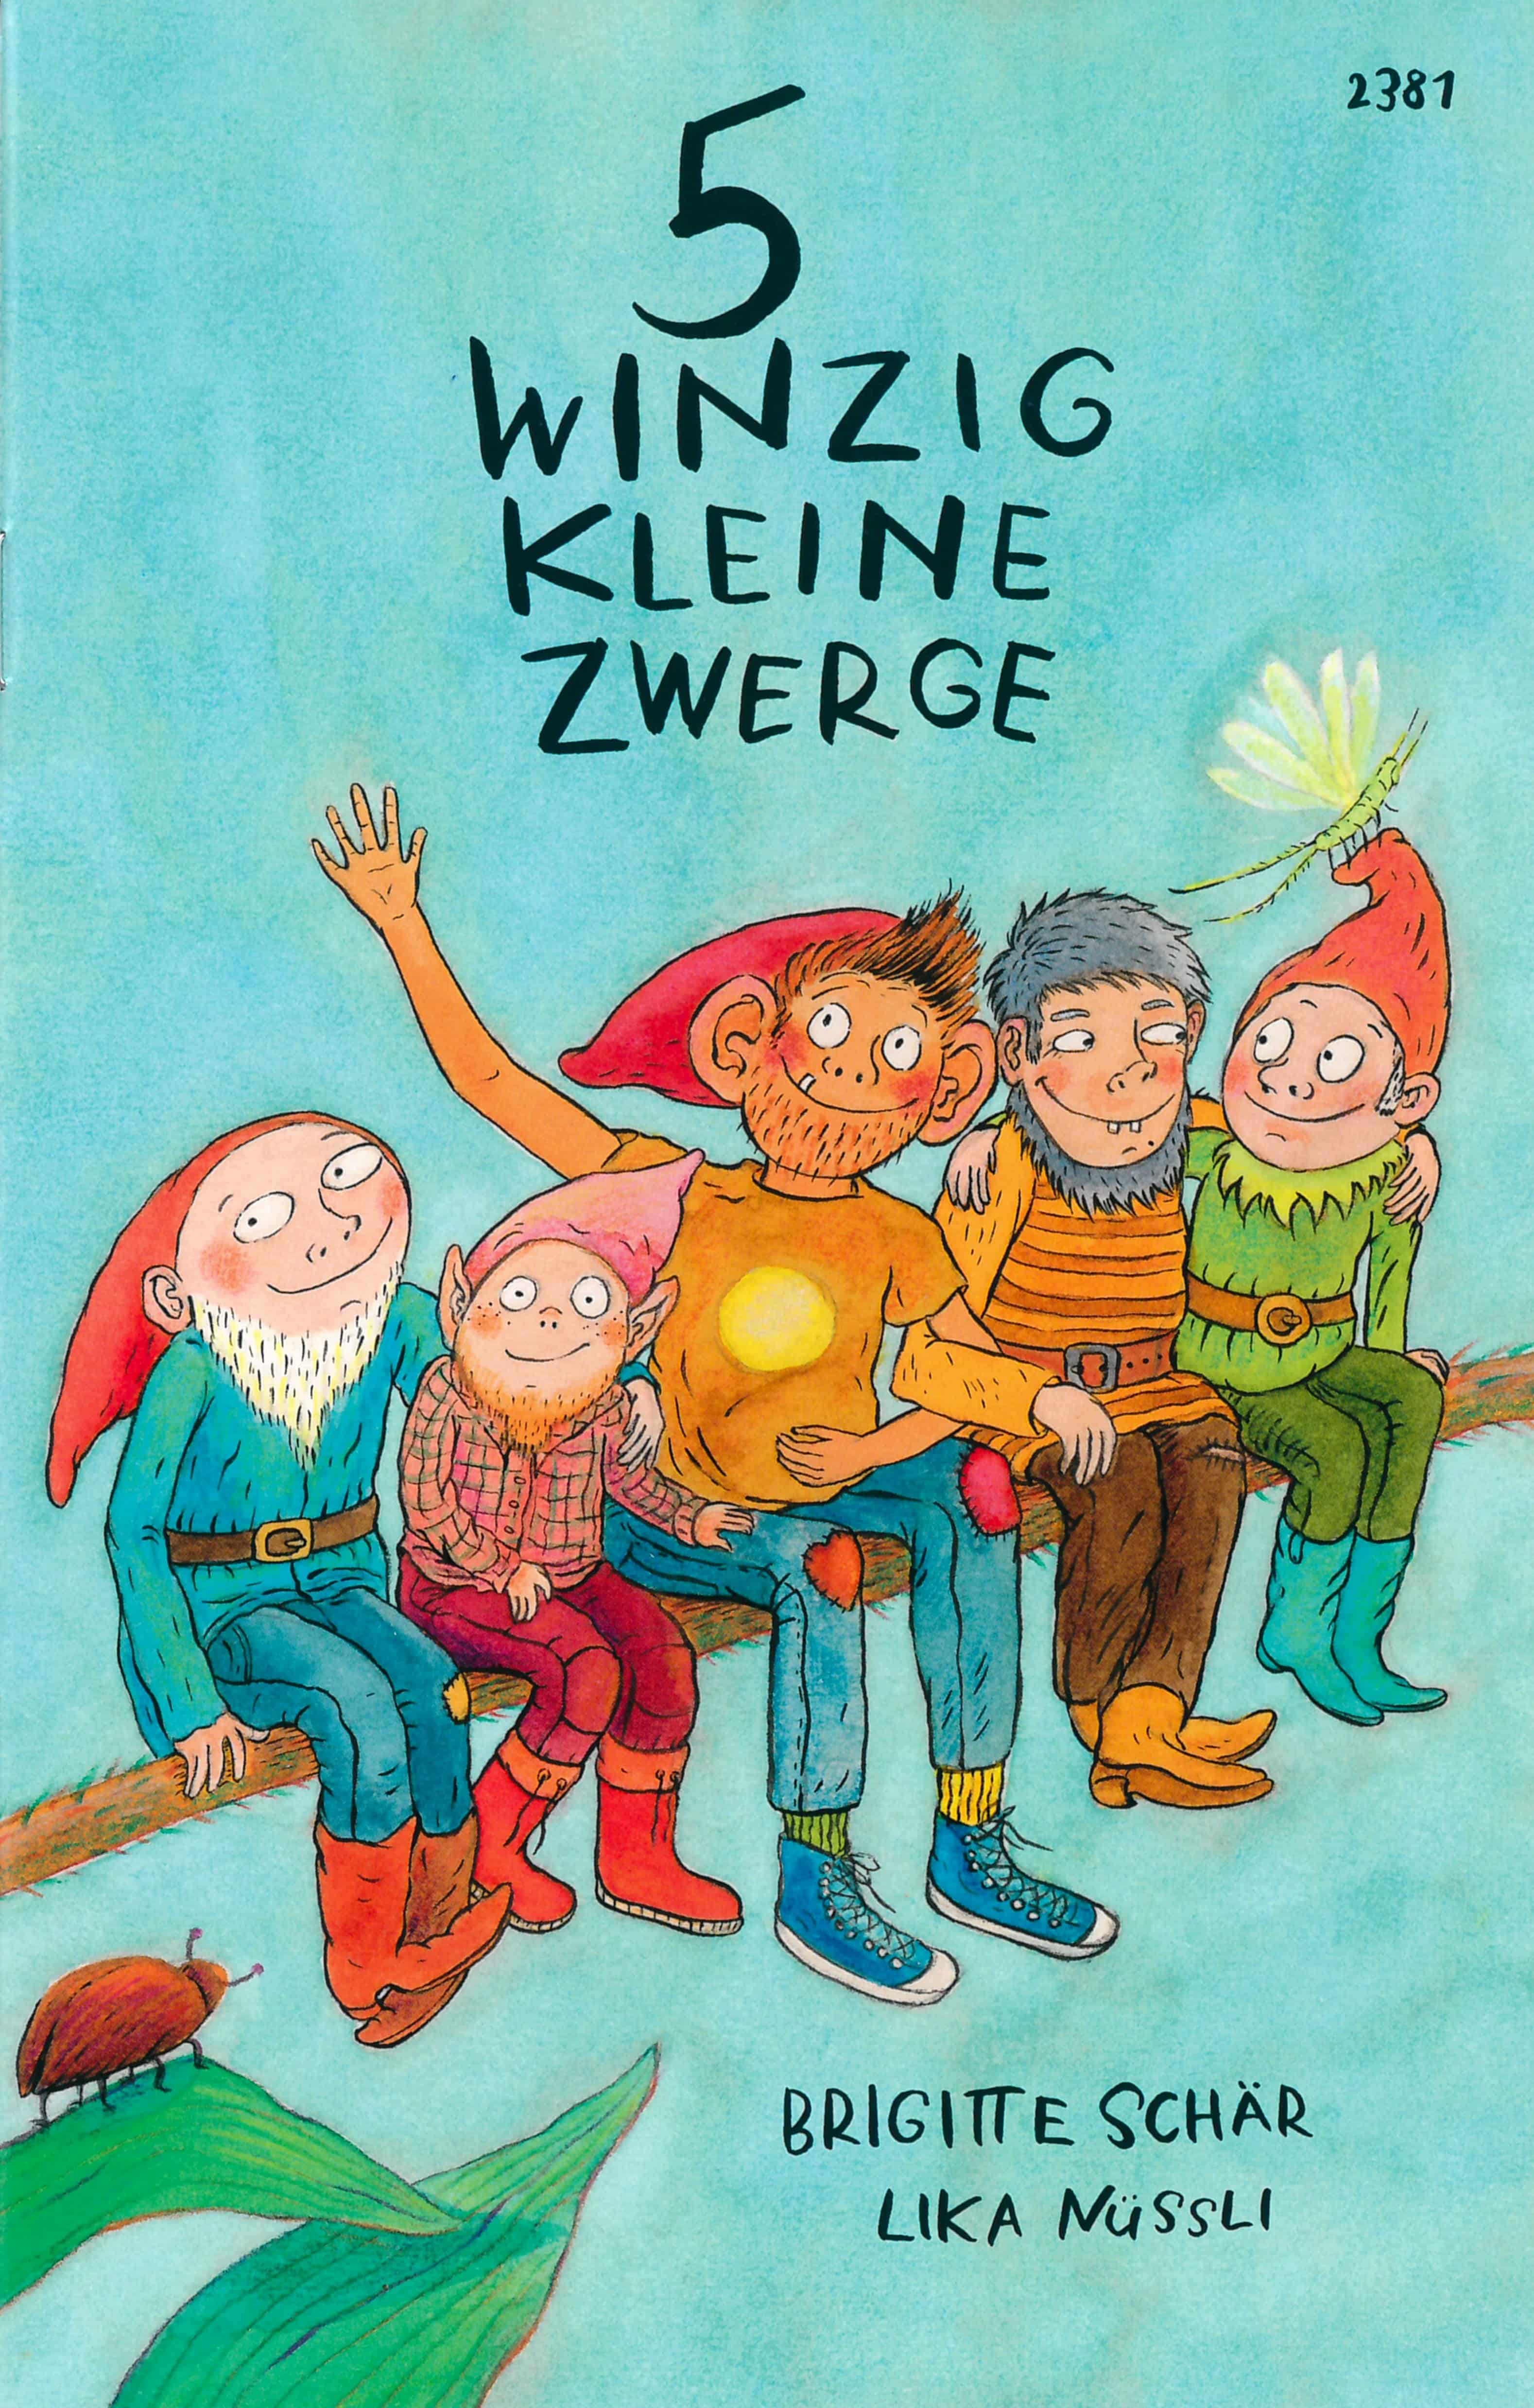 5 winzig kleine Zwerge, ein Kinderbuch von Brigitte Schaer, Illustration von Lika Nuessli, SJW Verlag, Fantasy, Sprachspiele